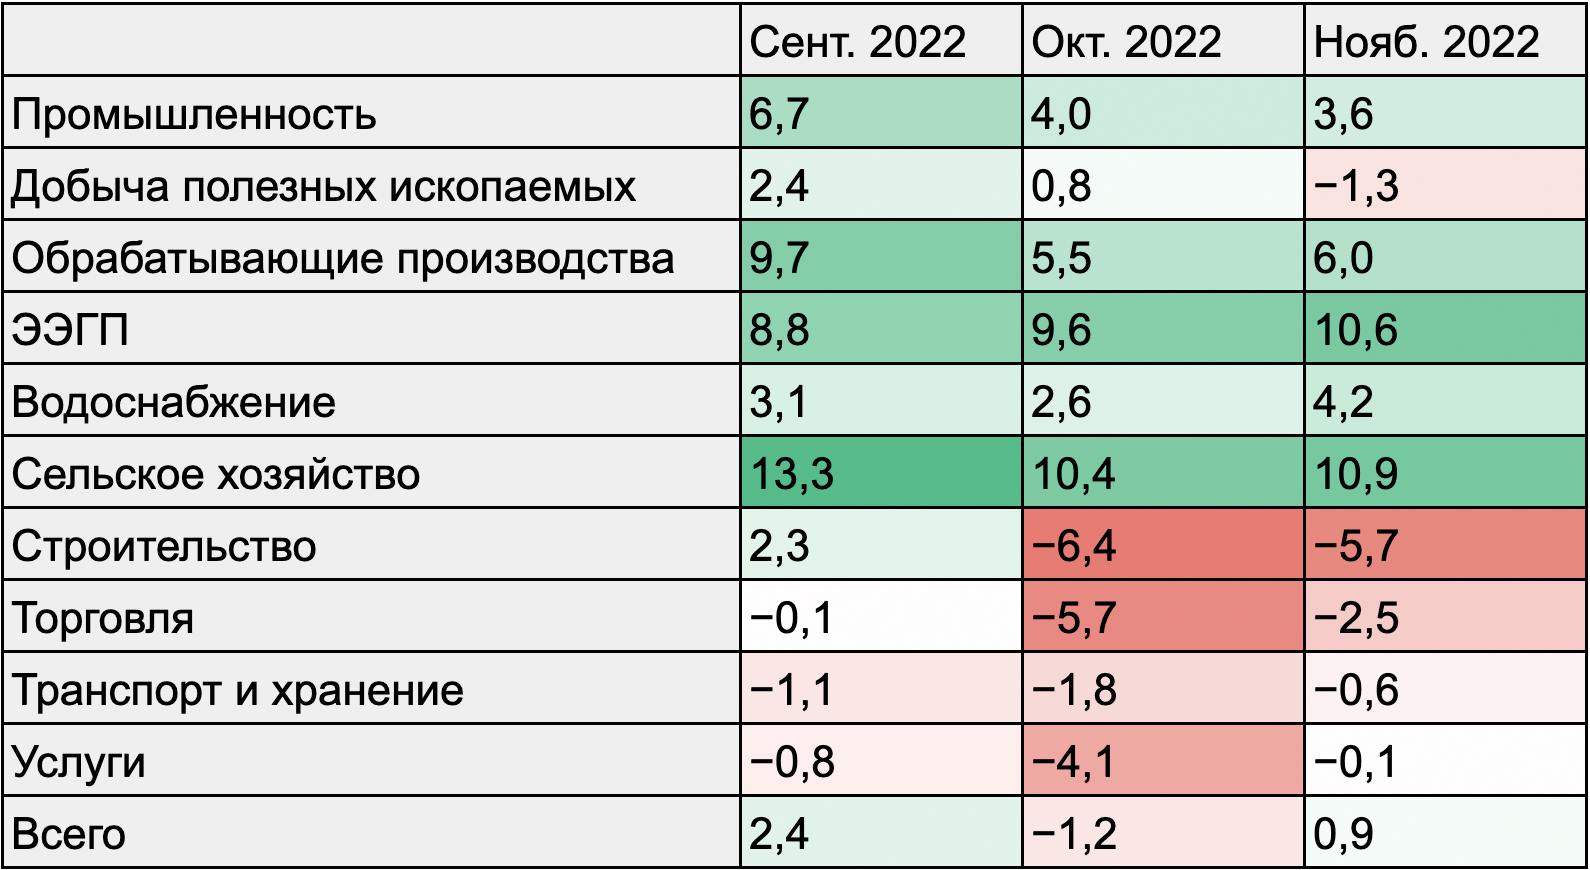 Индикатор бизнес-климата в России. Источник: Банк России